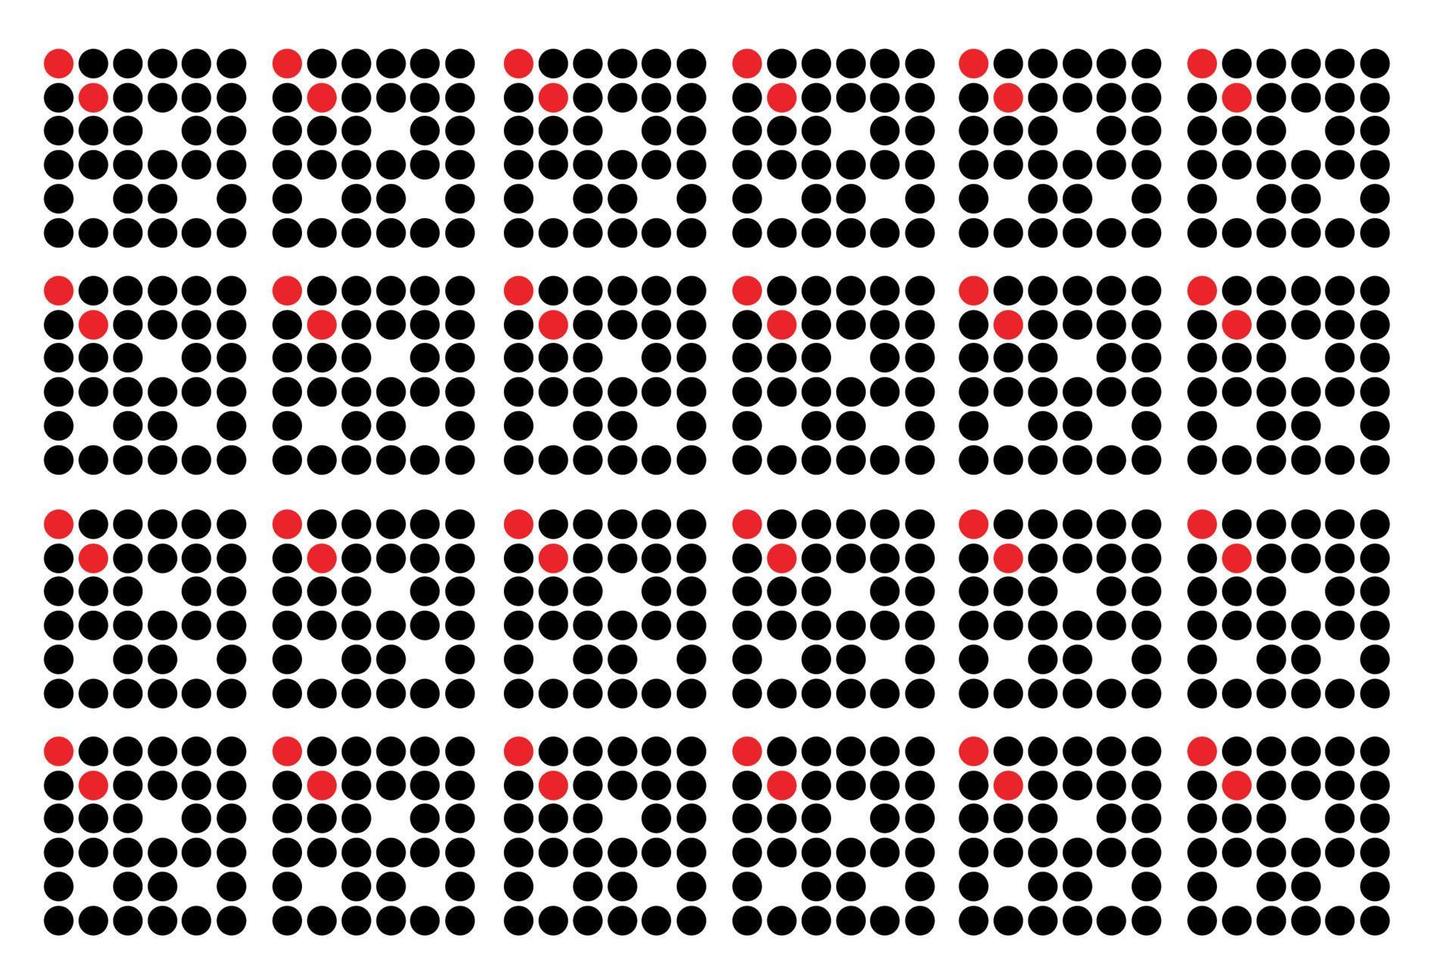 verzameling patroonsjablonen. geometrie oriëntatie vector zakelijke presentatie bundel voor ontwerp lay-out, poster, geometrische concept dekking.